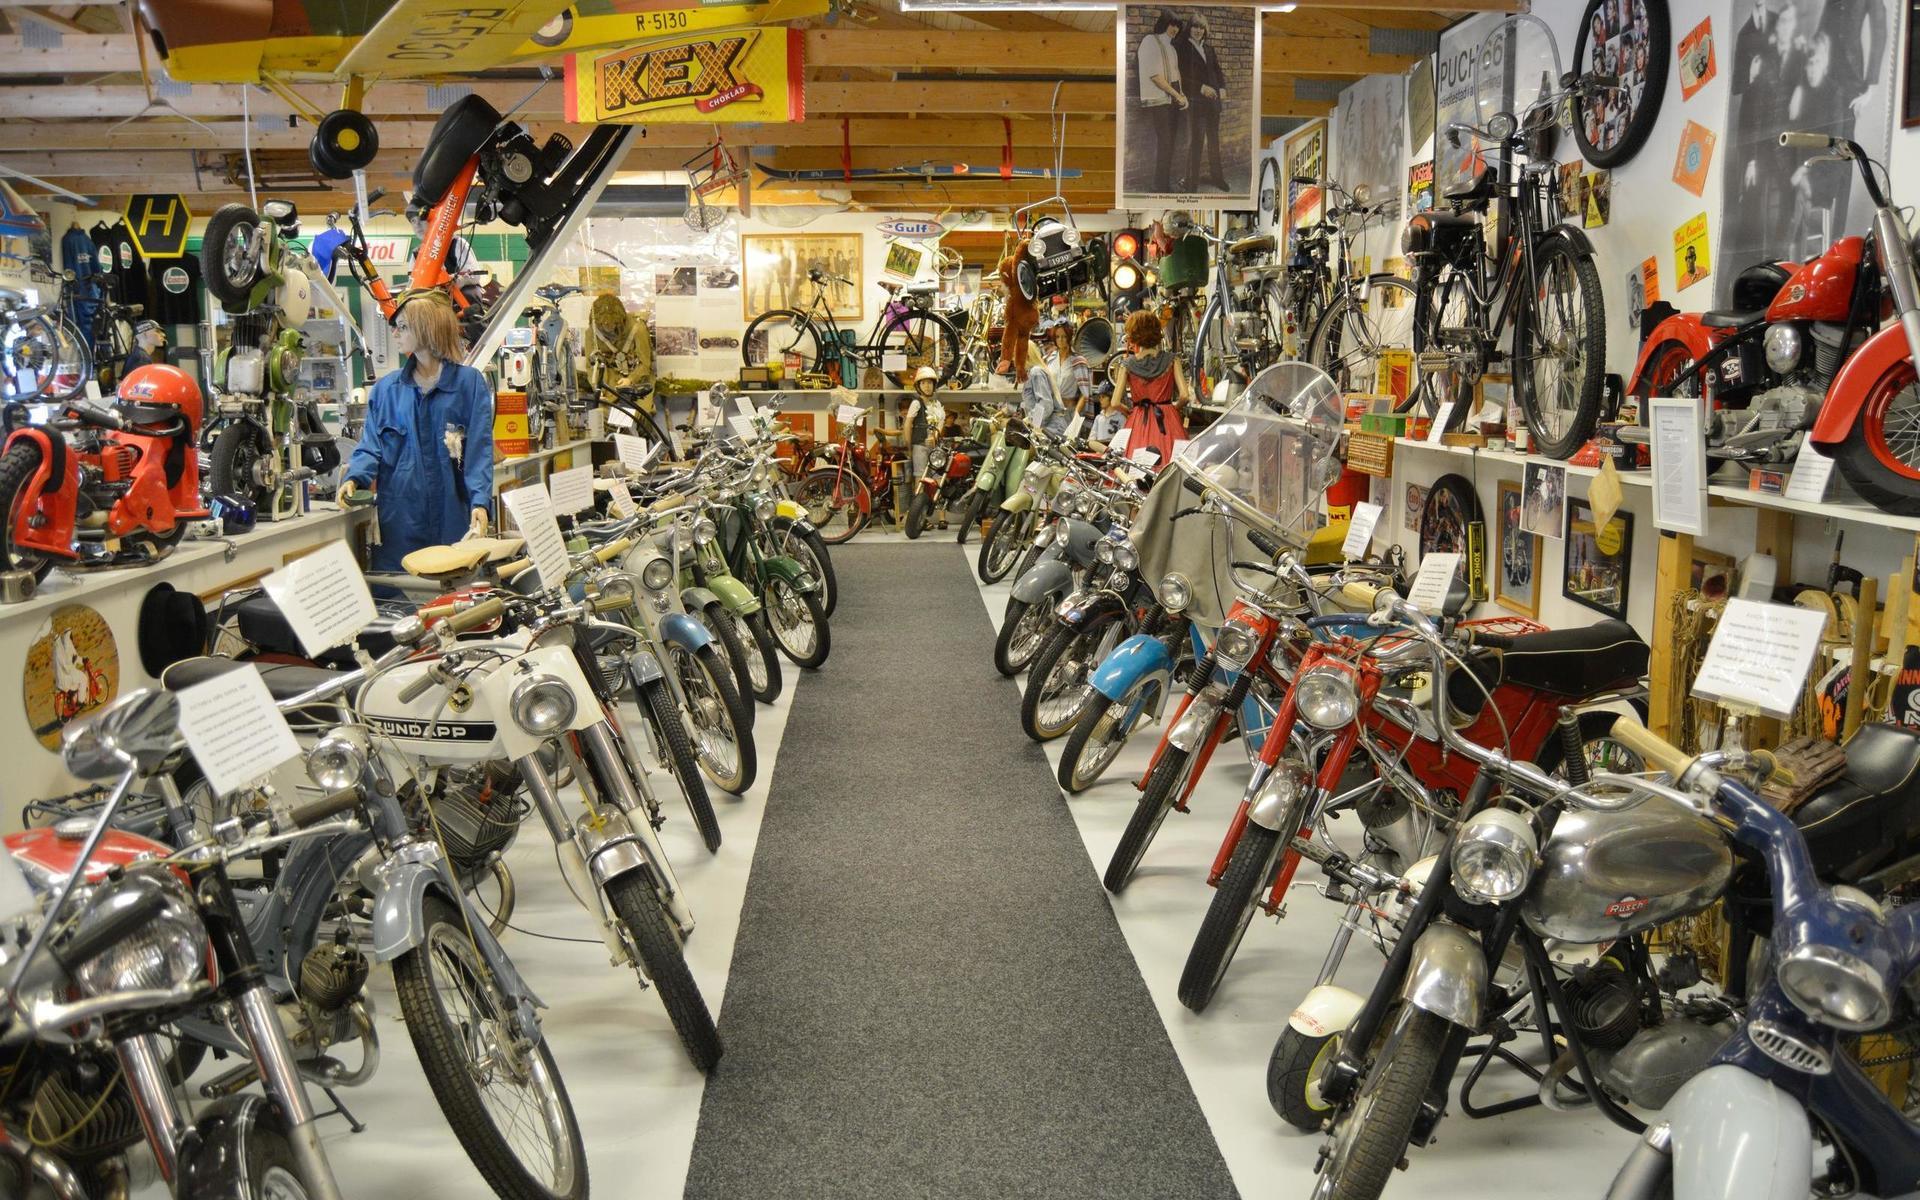 På Hjorteds mopedmuseum finns cyklar från olika decennier och länder representerade, från det lyxiga till det praktiska.